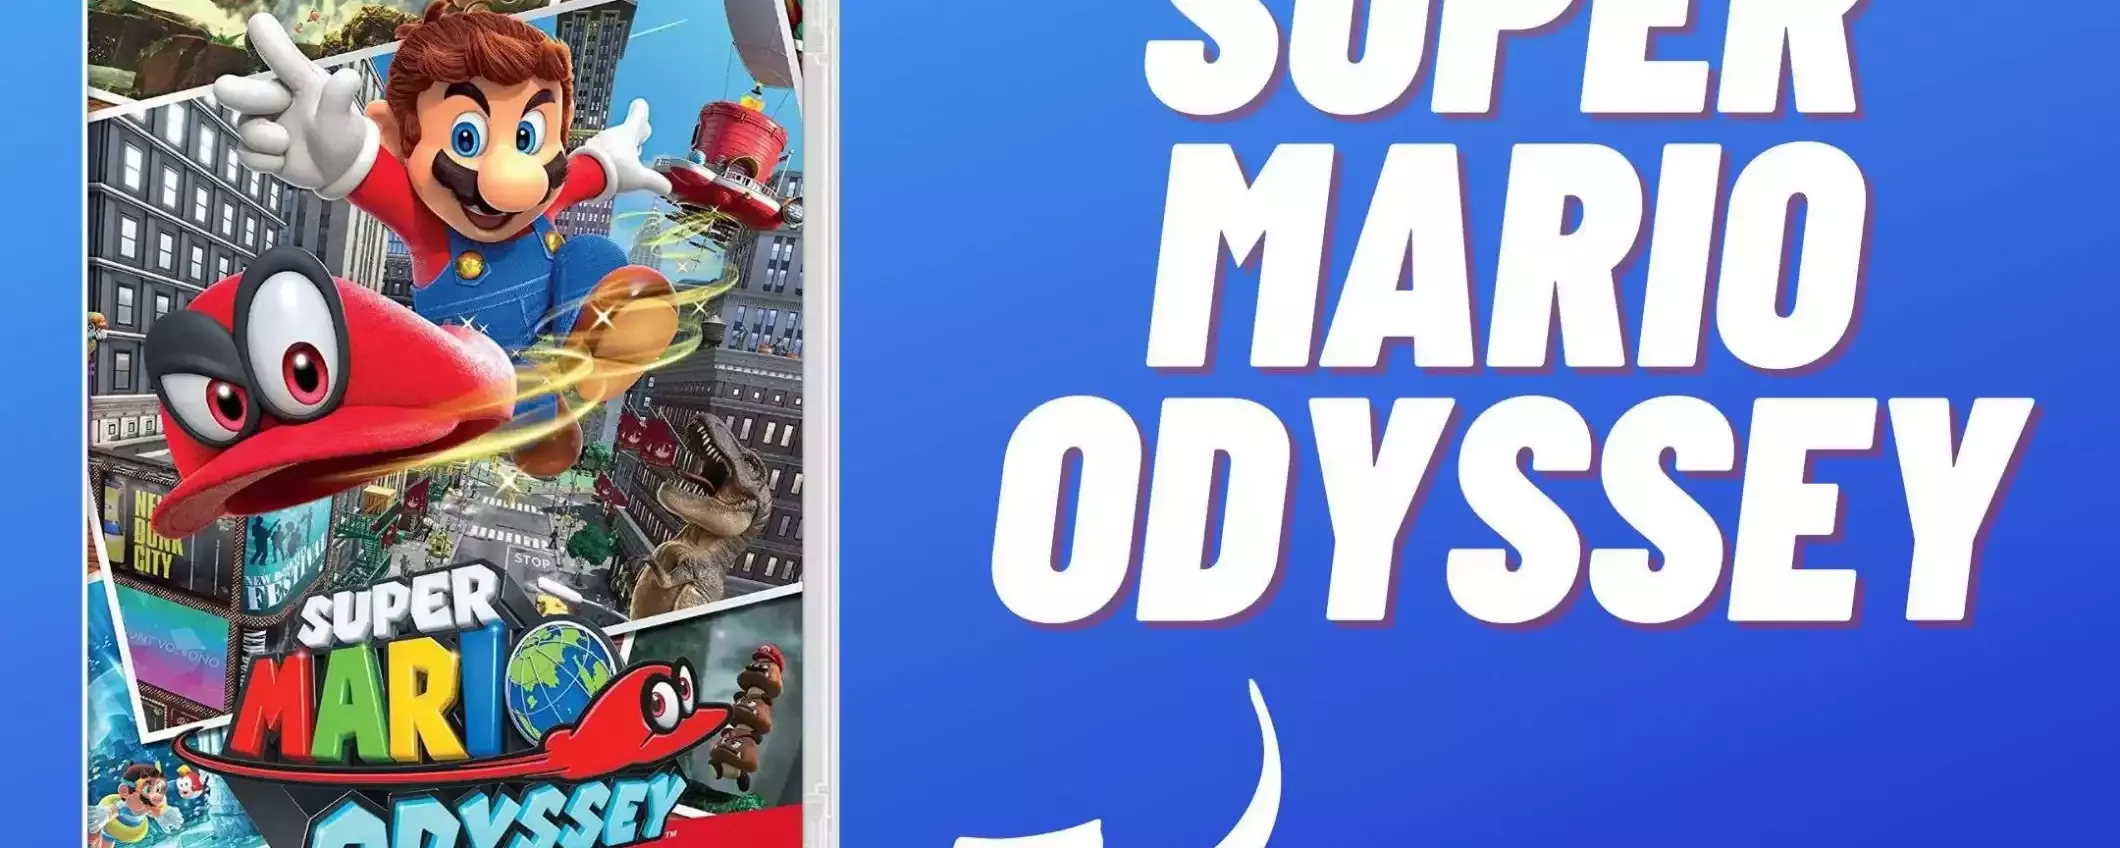 Super Mario Odyssey: vivi l'avventura più epica che ci sia OGGI su Amazon